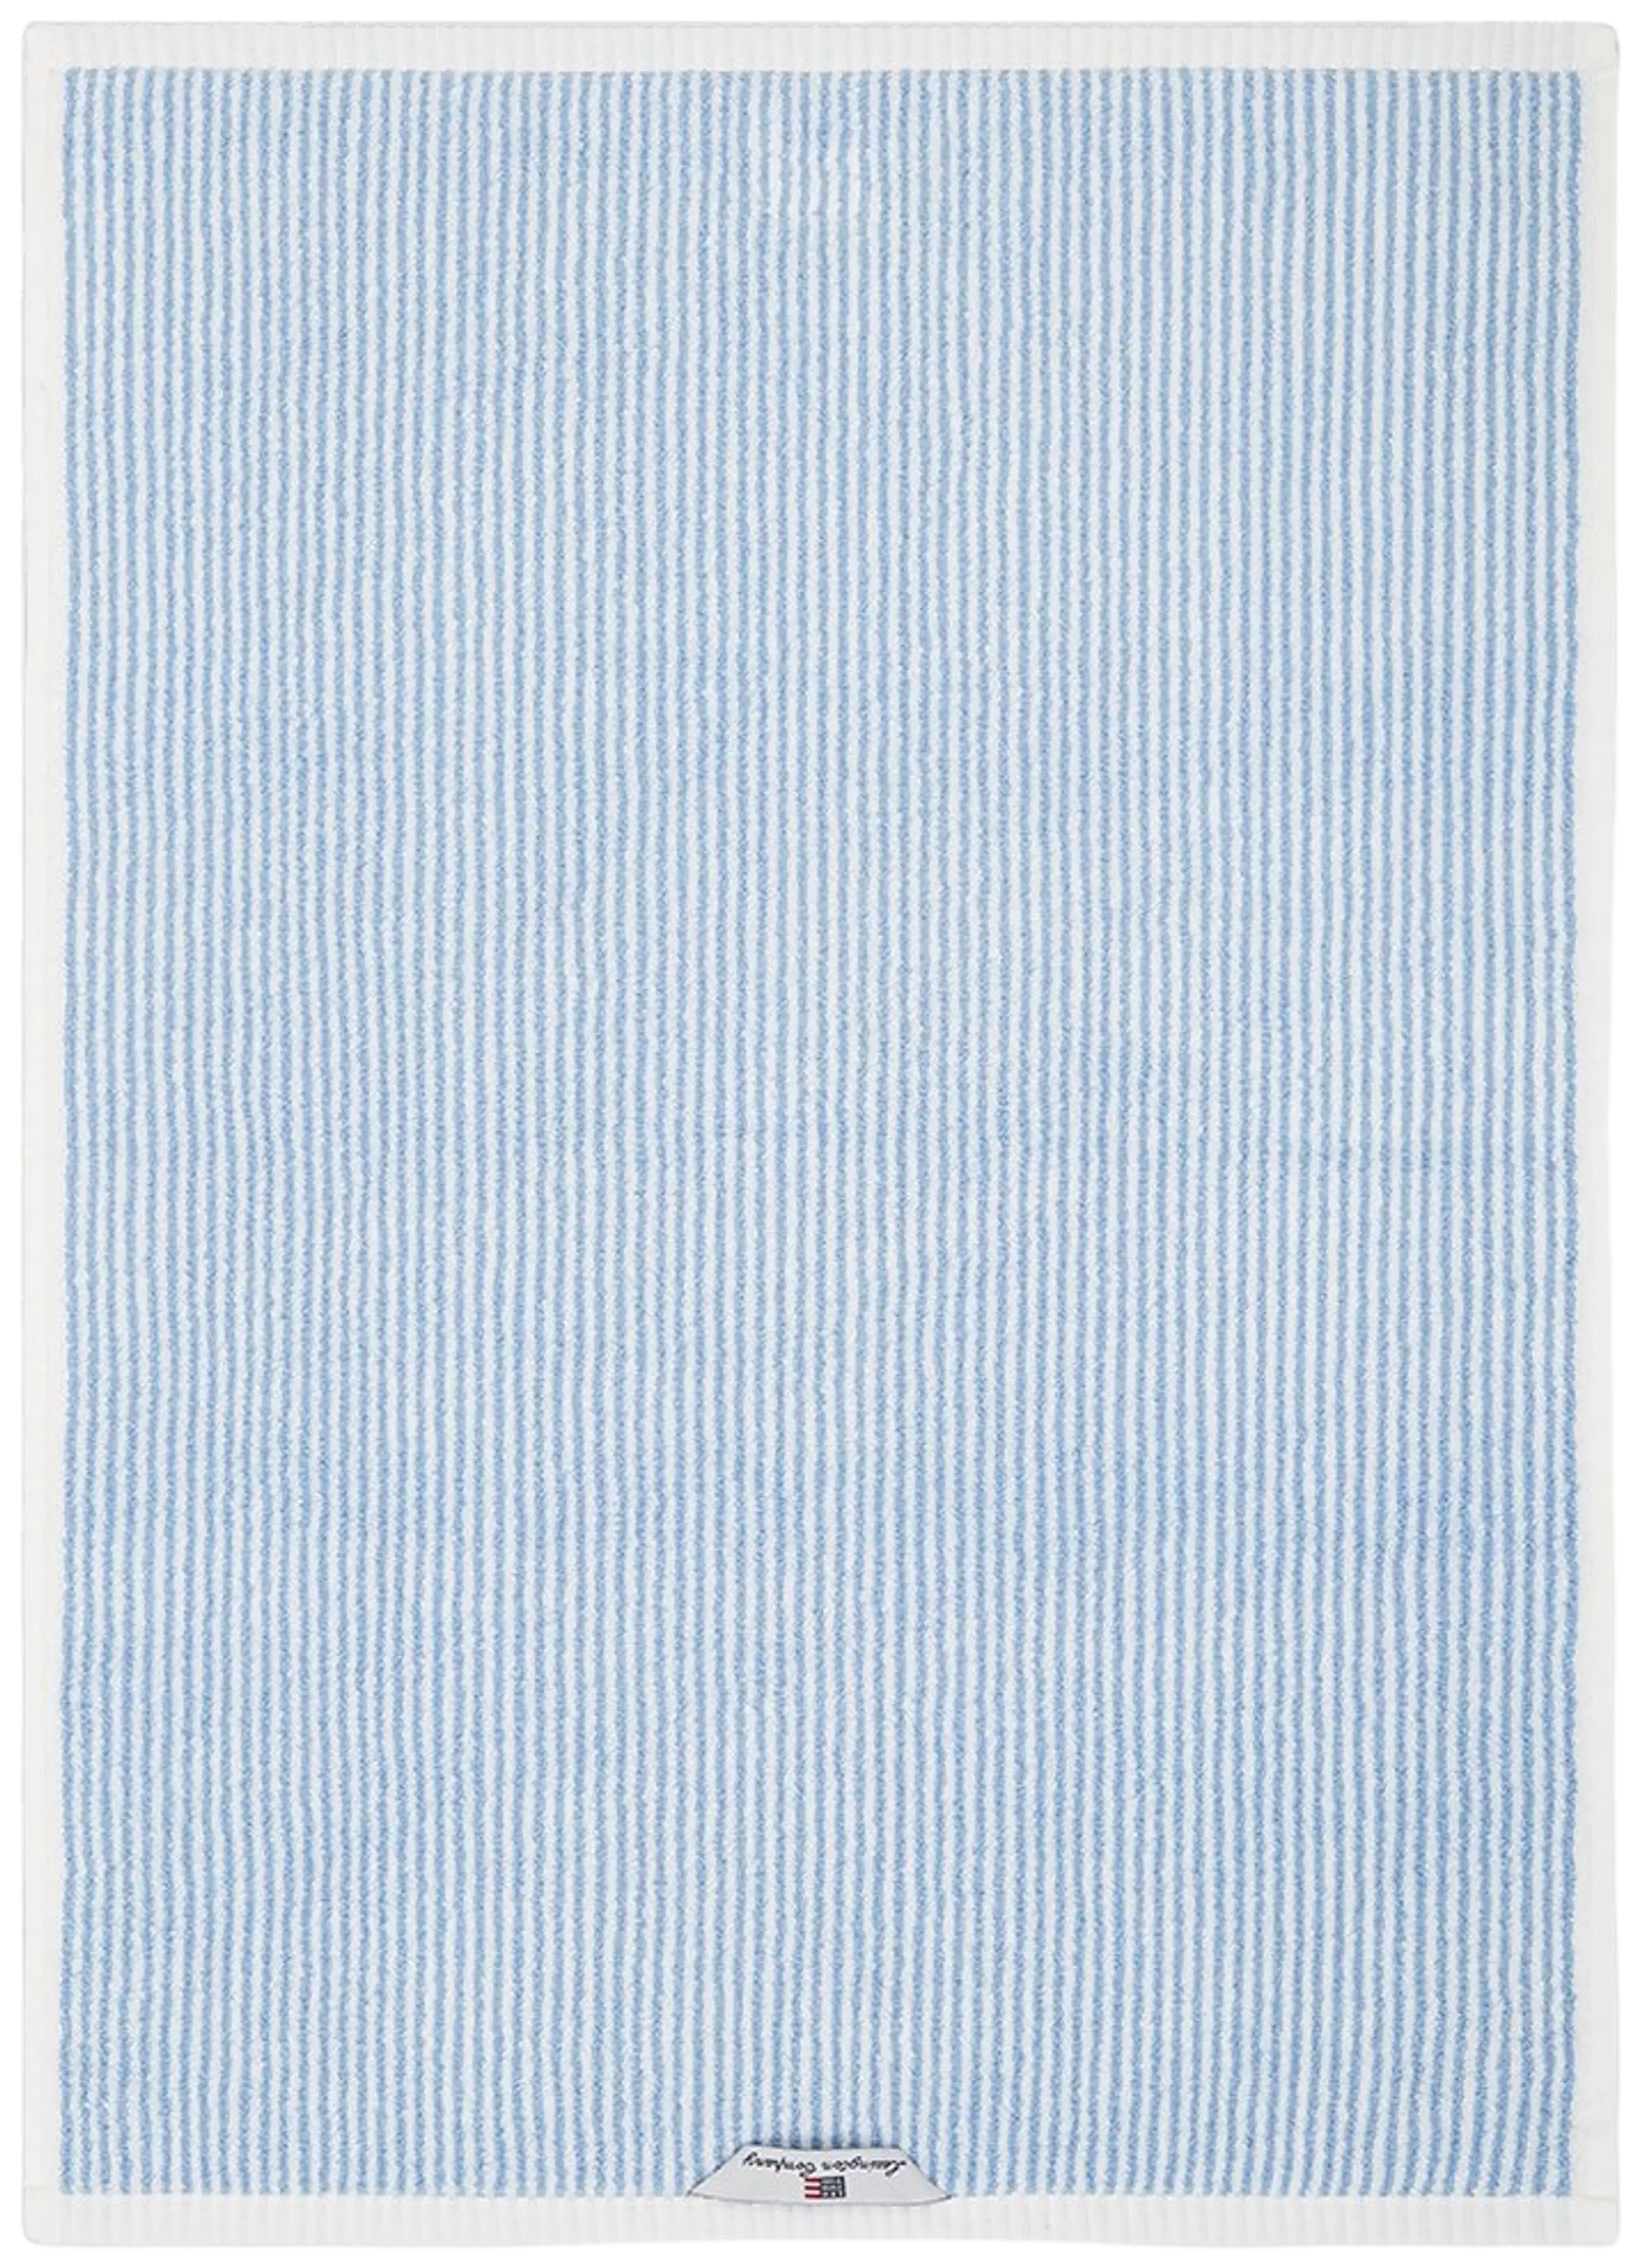 Lexington Original käsipyyhe 30x50cm valkoinen/sininen